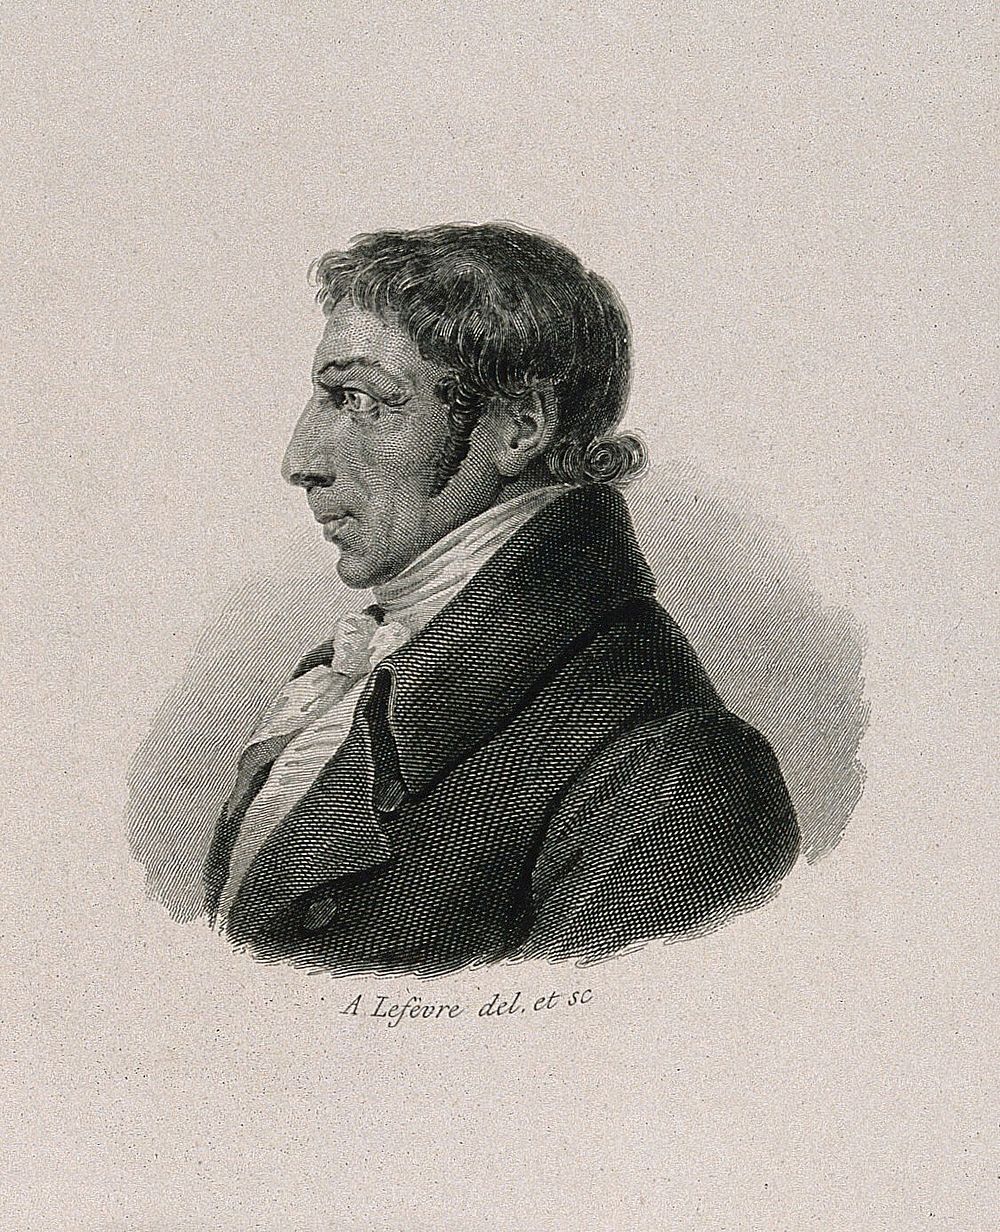 Albrecht Daniel Thaer. Line engraving by A. Lefèvre after himself.